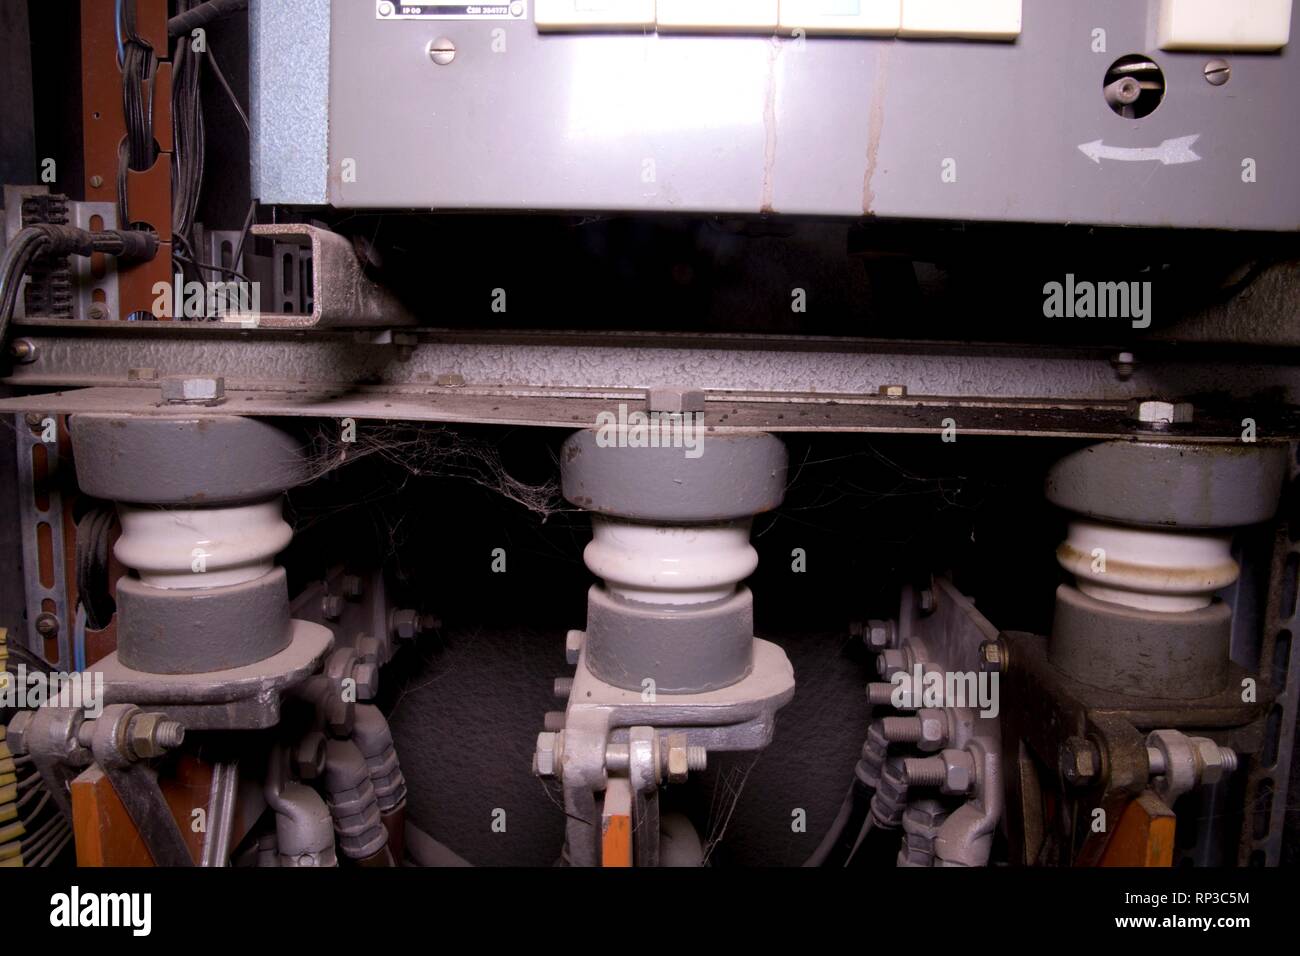 Isolants électriques dans le vieux panneau de distribution électrique. Cas de distribution industrielle. Close-up. Banque D'Images